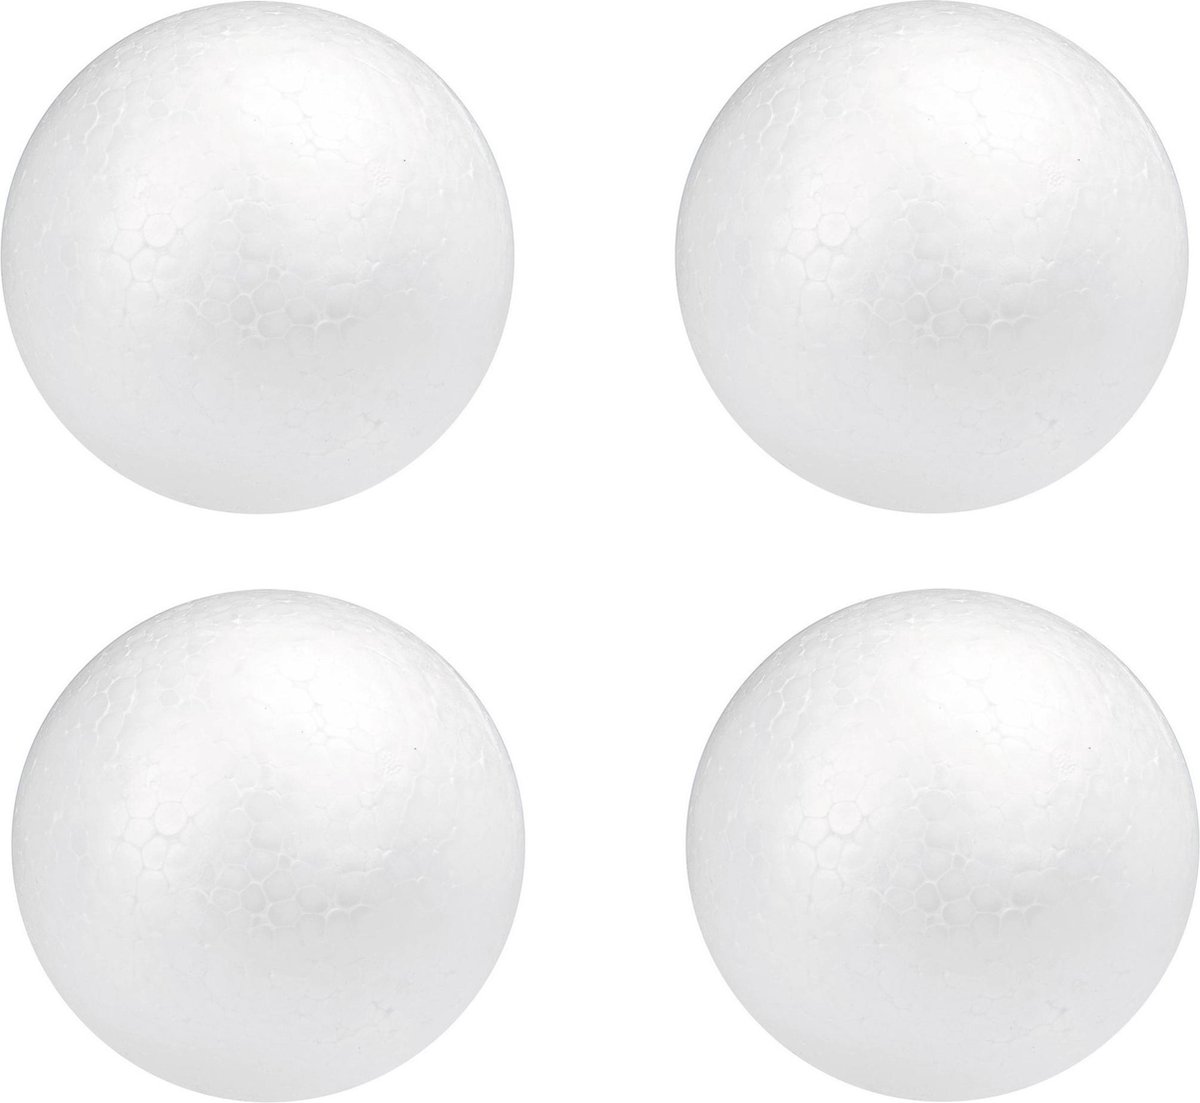 50x stuks Piepschuim hobby knutselen vormen/figuren ronde ballen/bollen van 5 cm